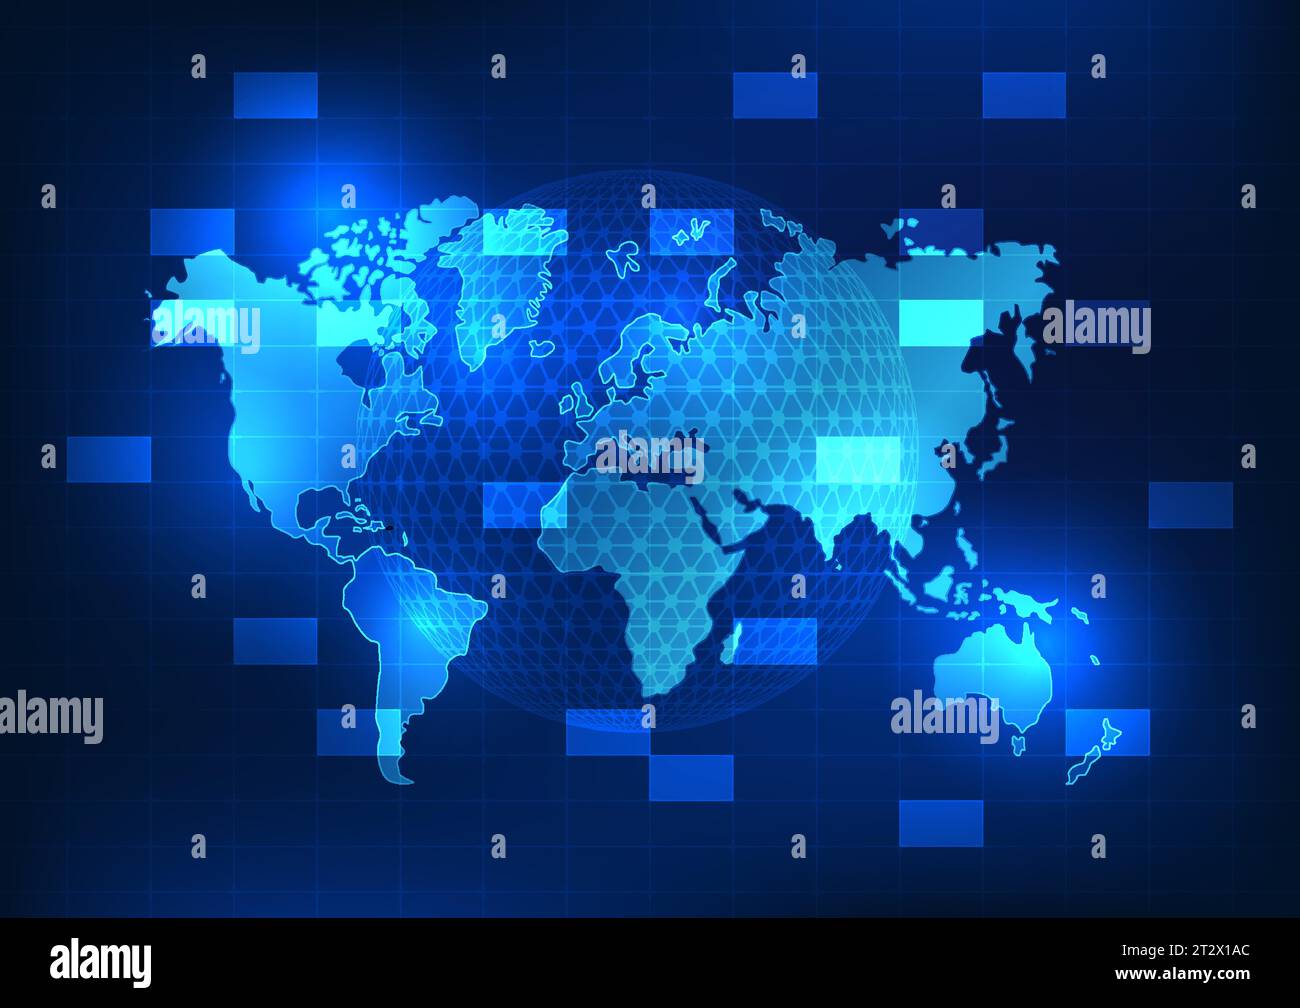 La technologie de carte du monde montre la technologie qui est disponible dans le monde entier pour développer les conditions de vie, l'économie et la communication. Recherche d'informations Illustration de Vecteur